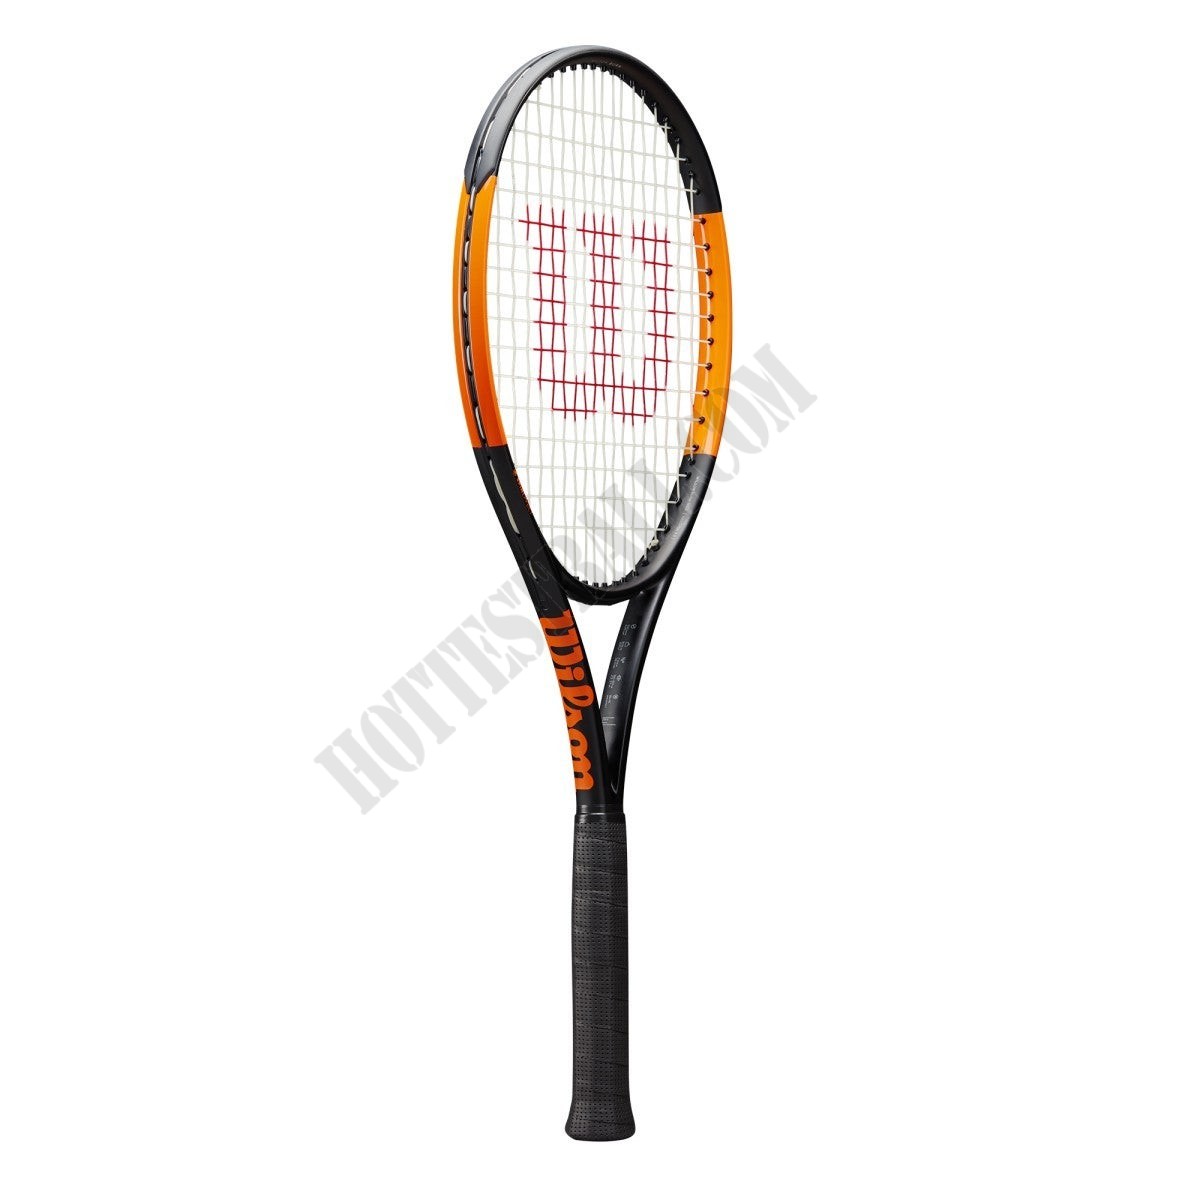 Burn 100LS Tennis Racket - Wilson Discount Store - Burn 100LS Tennis Racket - Wilson Discount Store